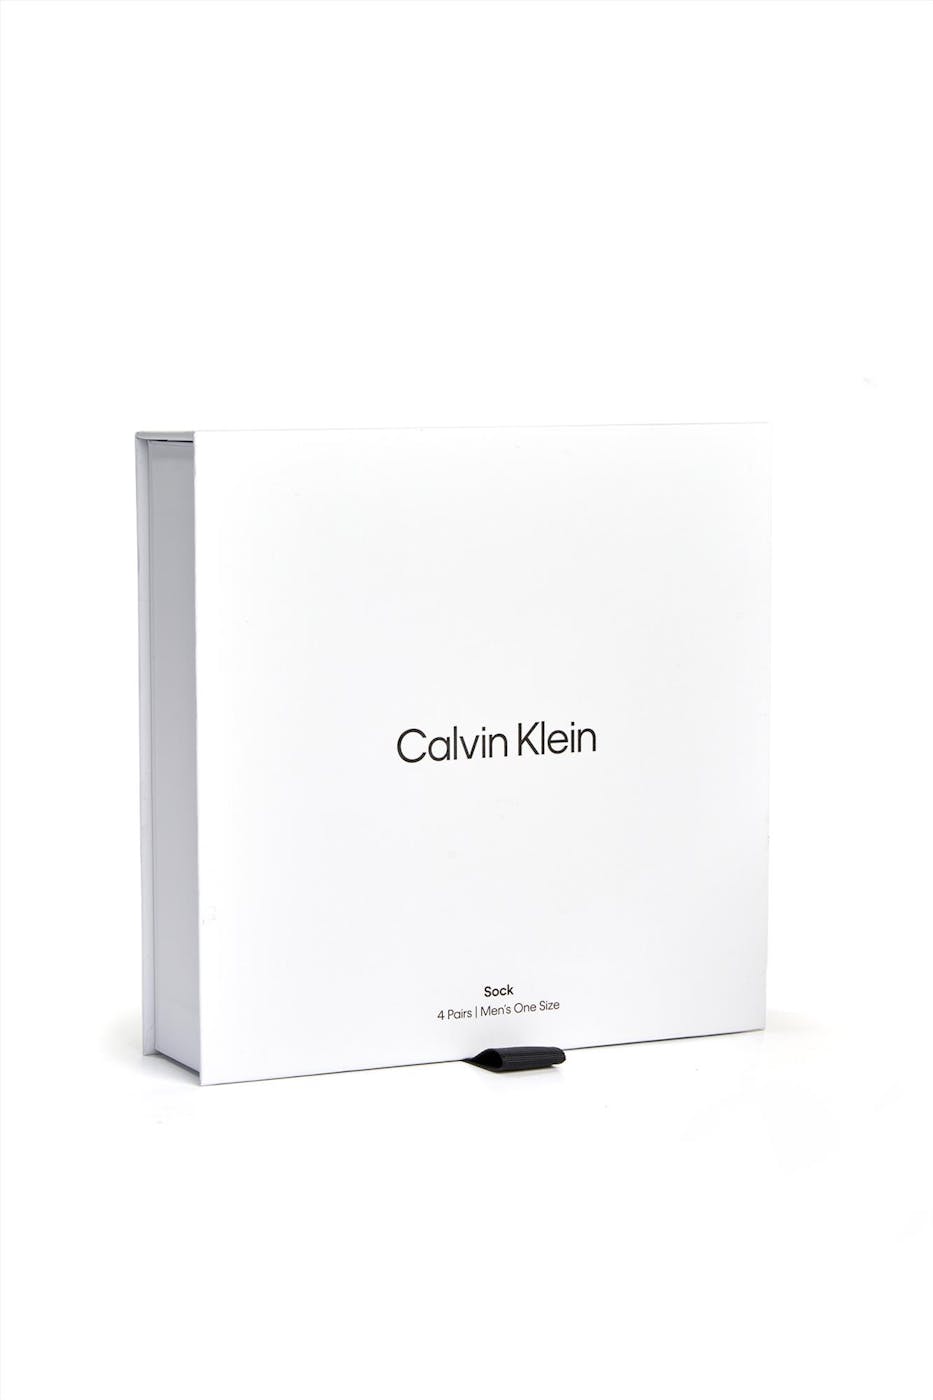 Calvin Klein - Grijs-Zwarte Logoprint 4-pack cadeaubox sokken